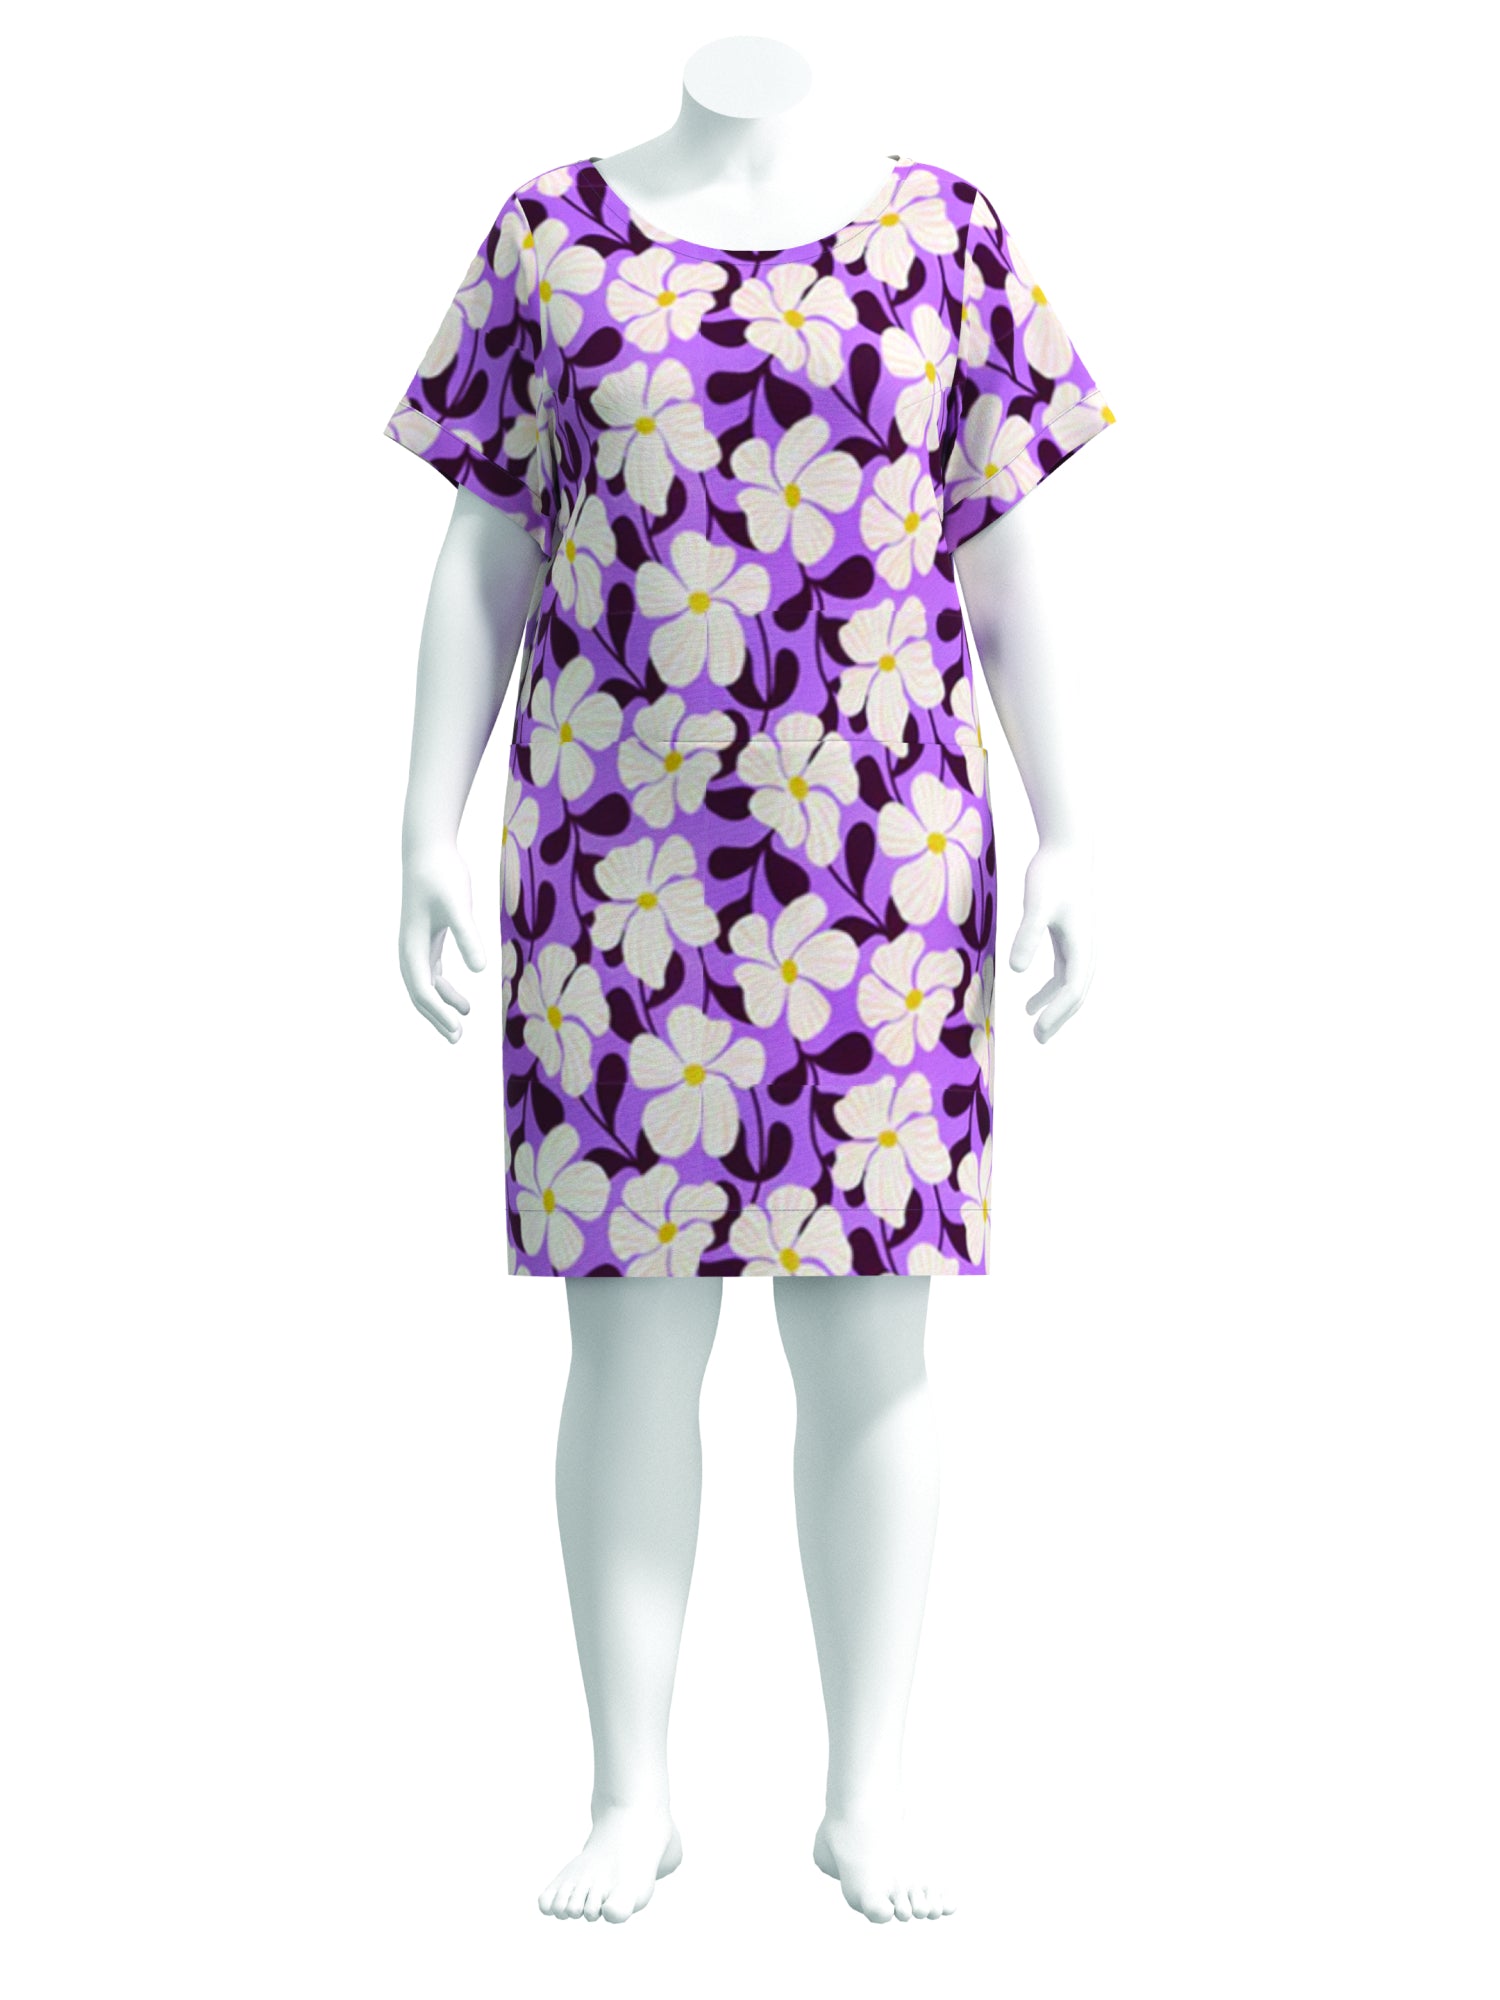 F-COT171-Graphic-Floral-Print-Cotton-Poplin-Multi-Lavender-Core-Fabrics-sample.jpg